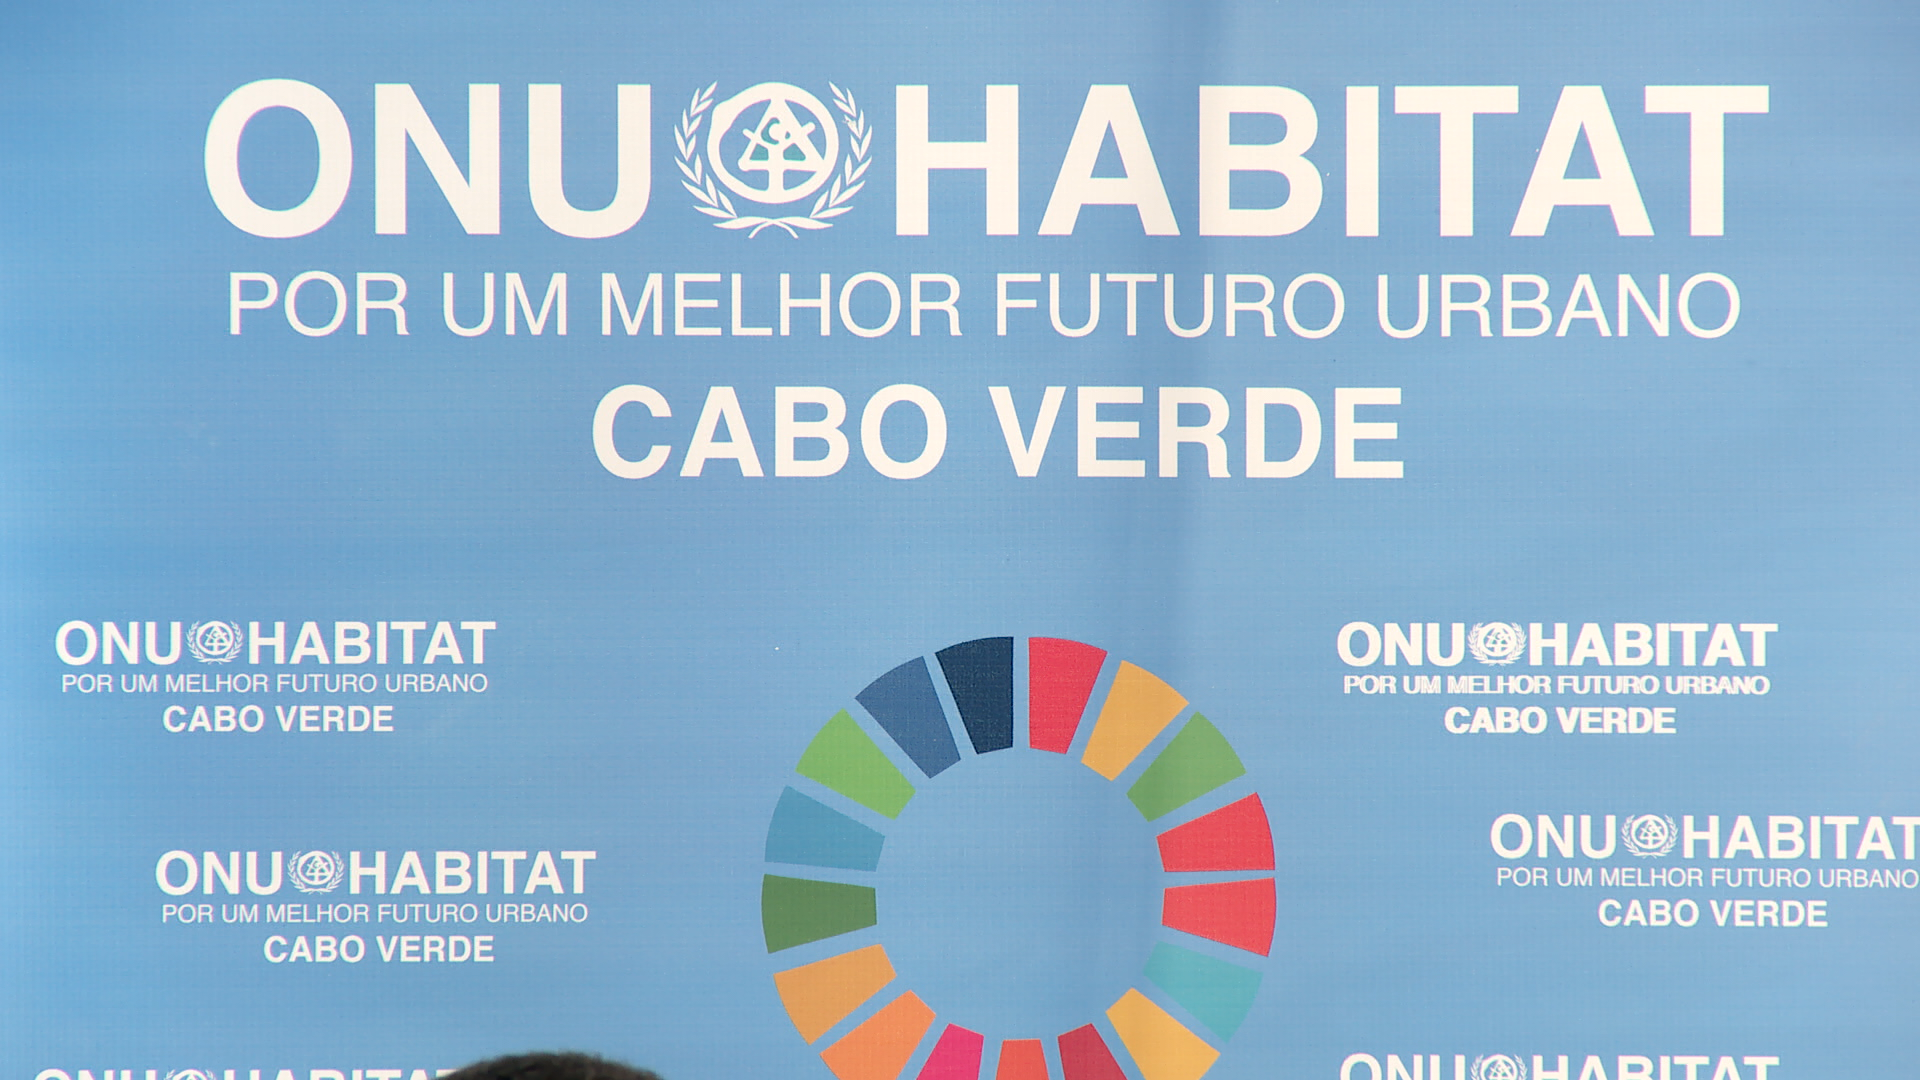 ONU Habitat aponta a inclusão social como factor de desenvolvimento das comunidades